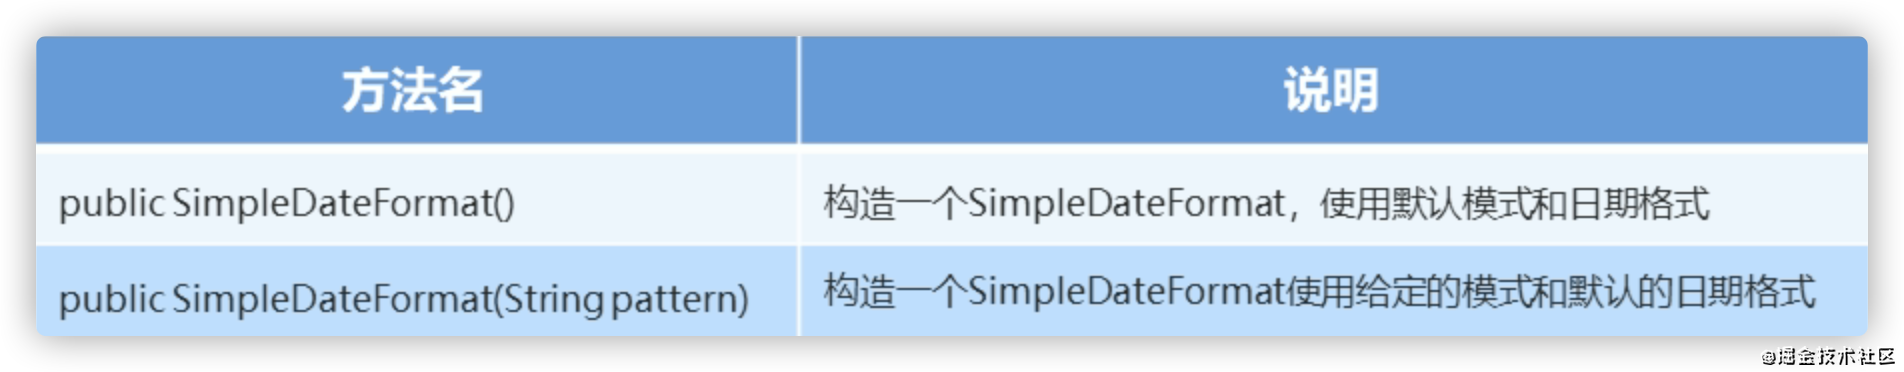 Java Date - SimpleDateFormat 的使用